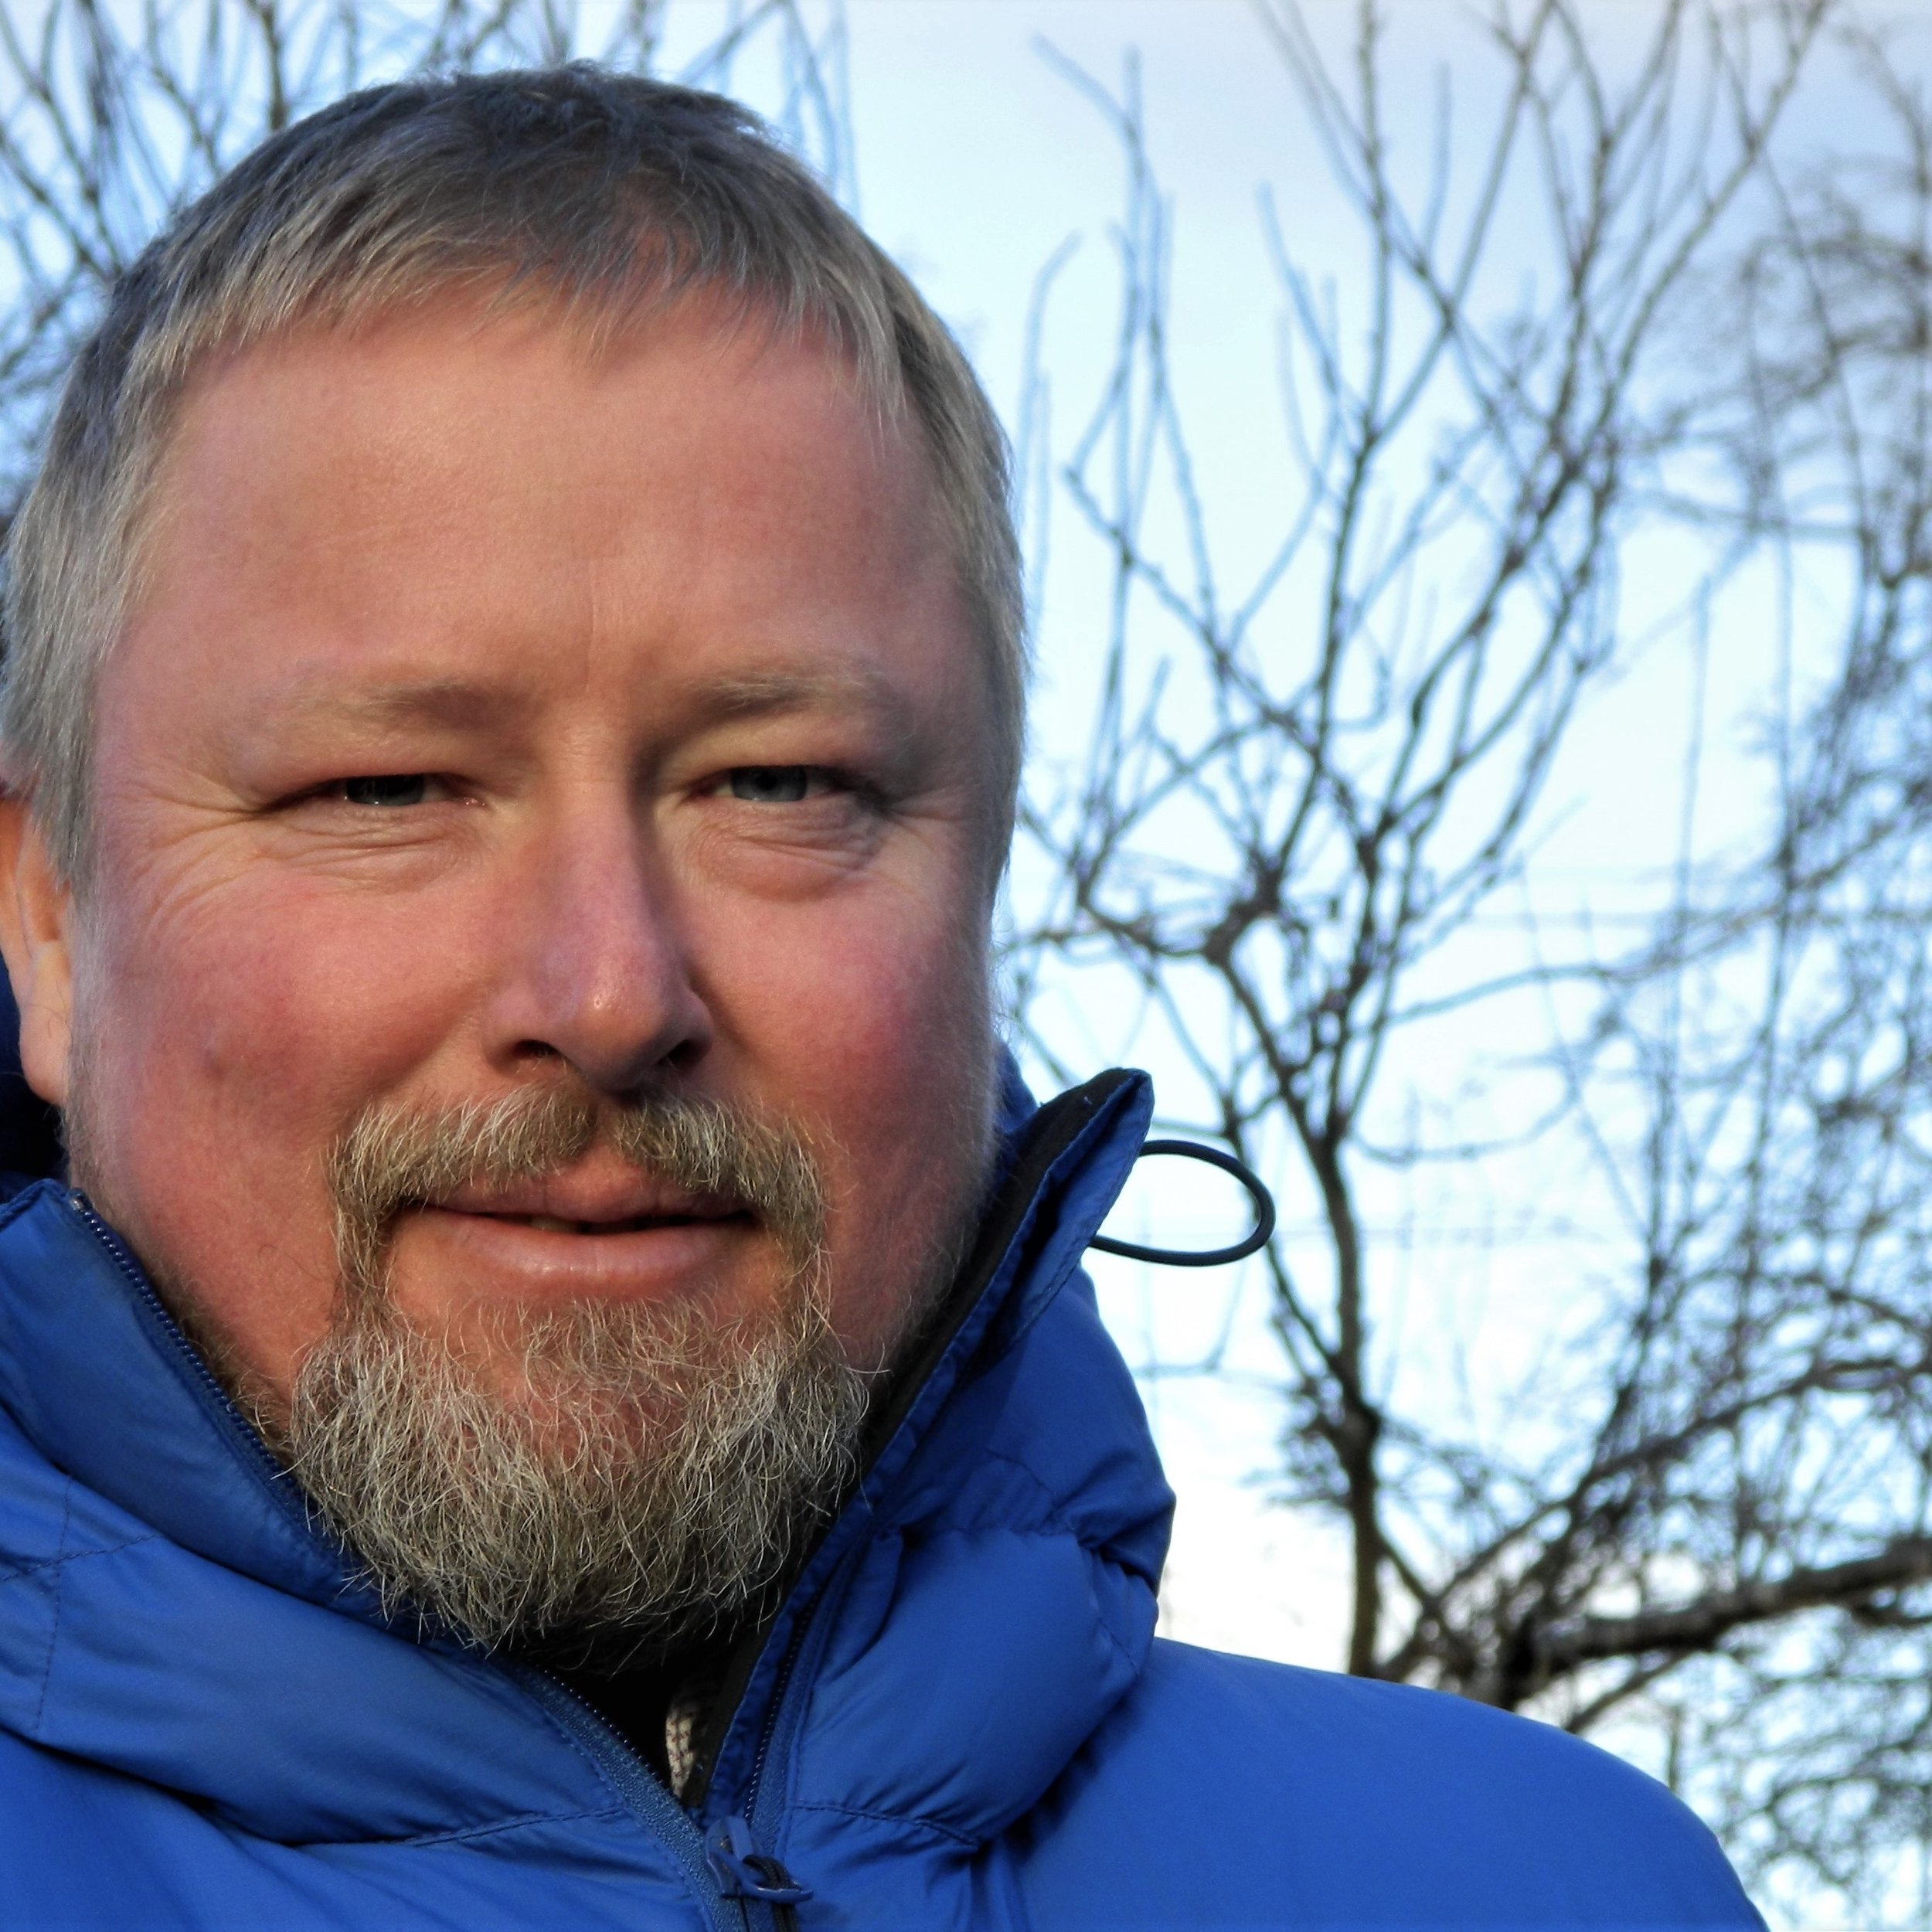 Nick Drainey,  journalist specialising in rural Scotland